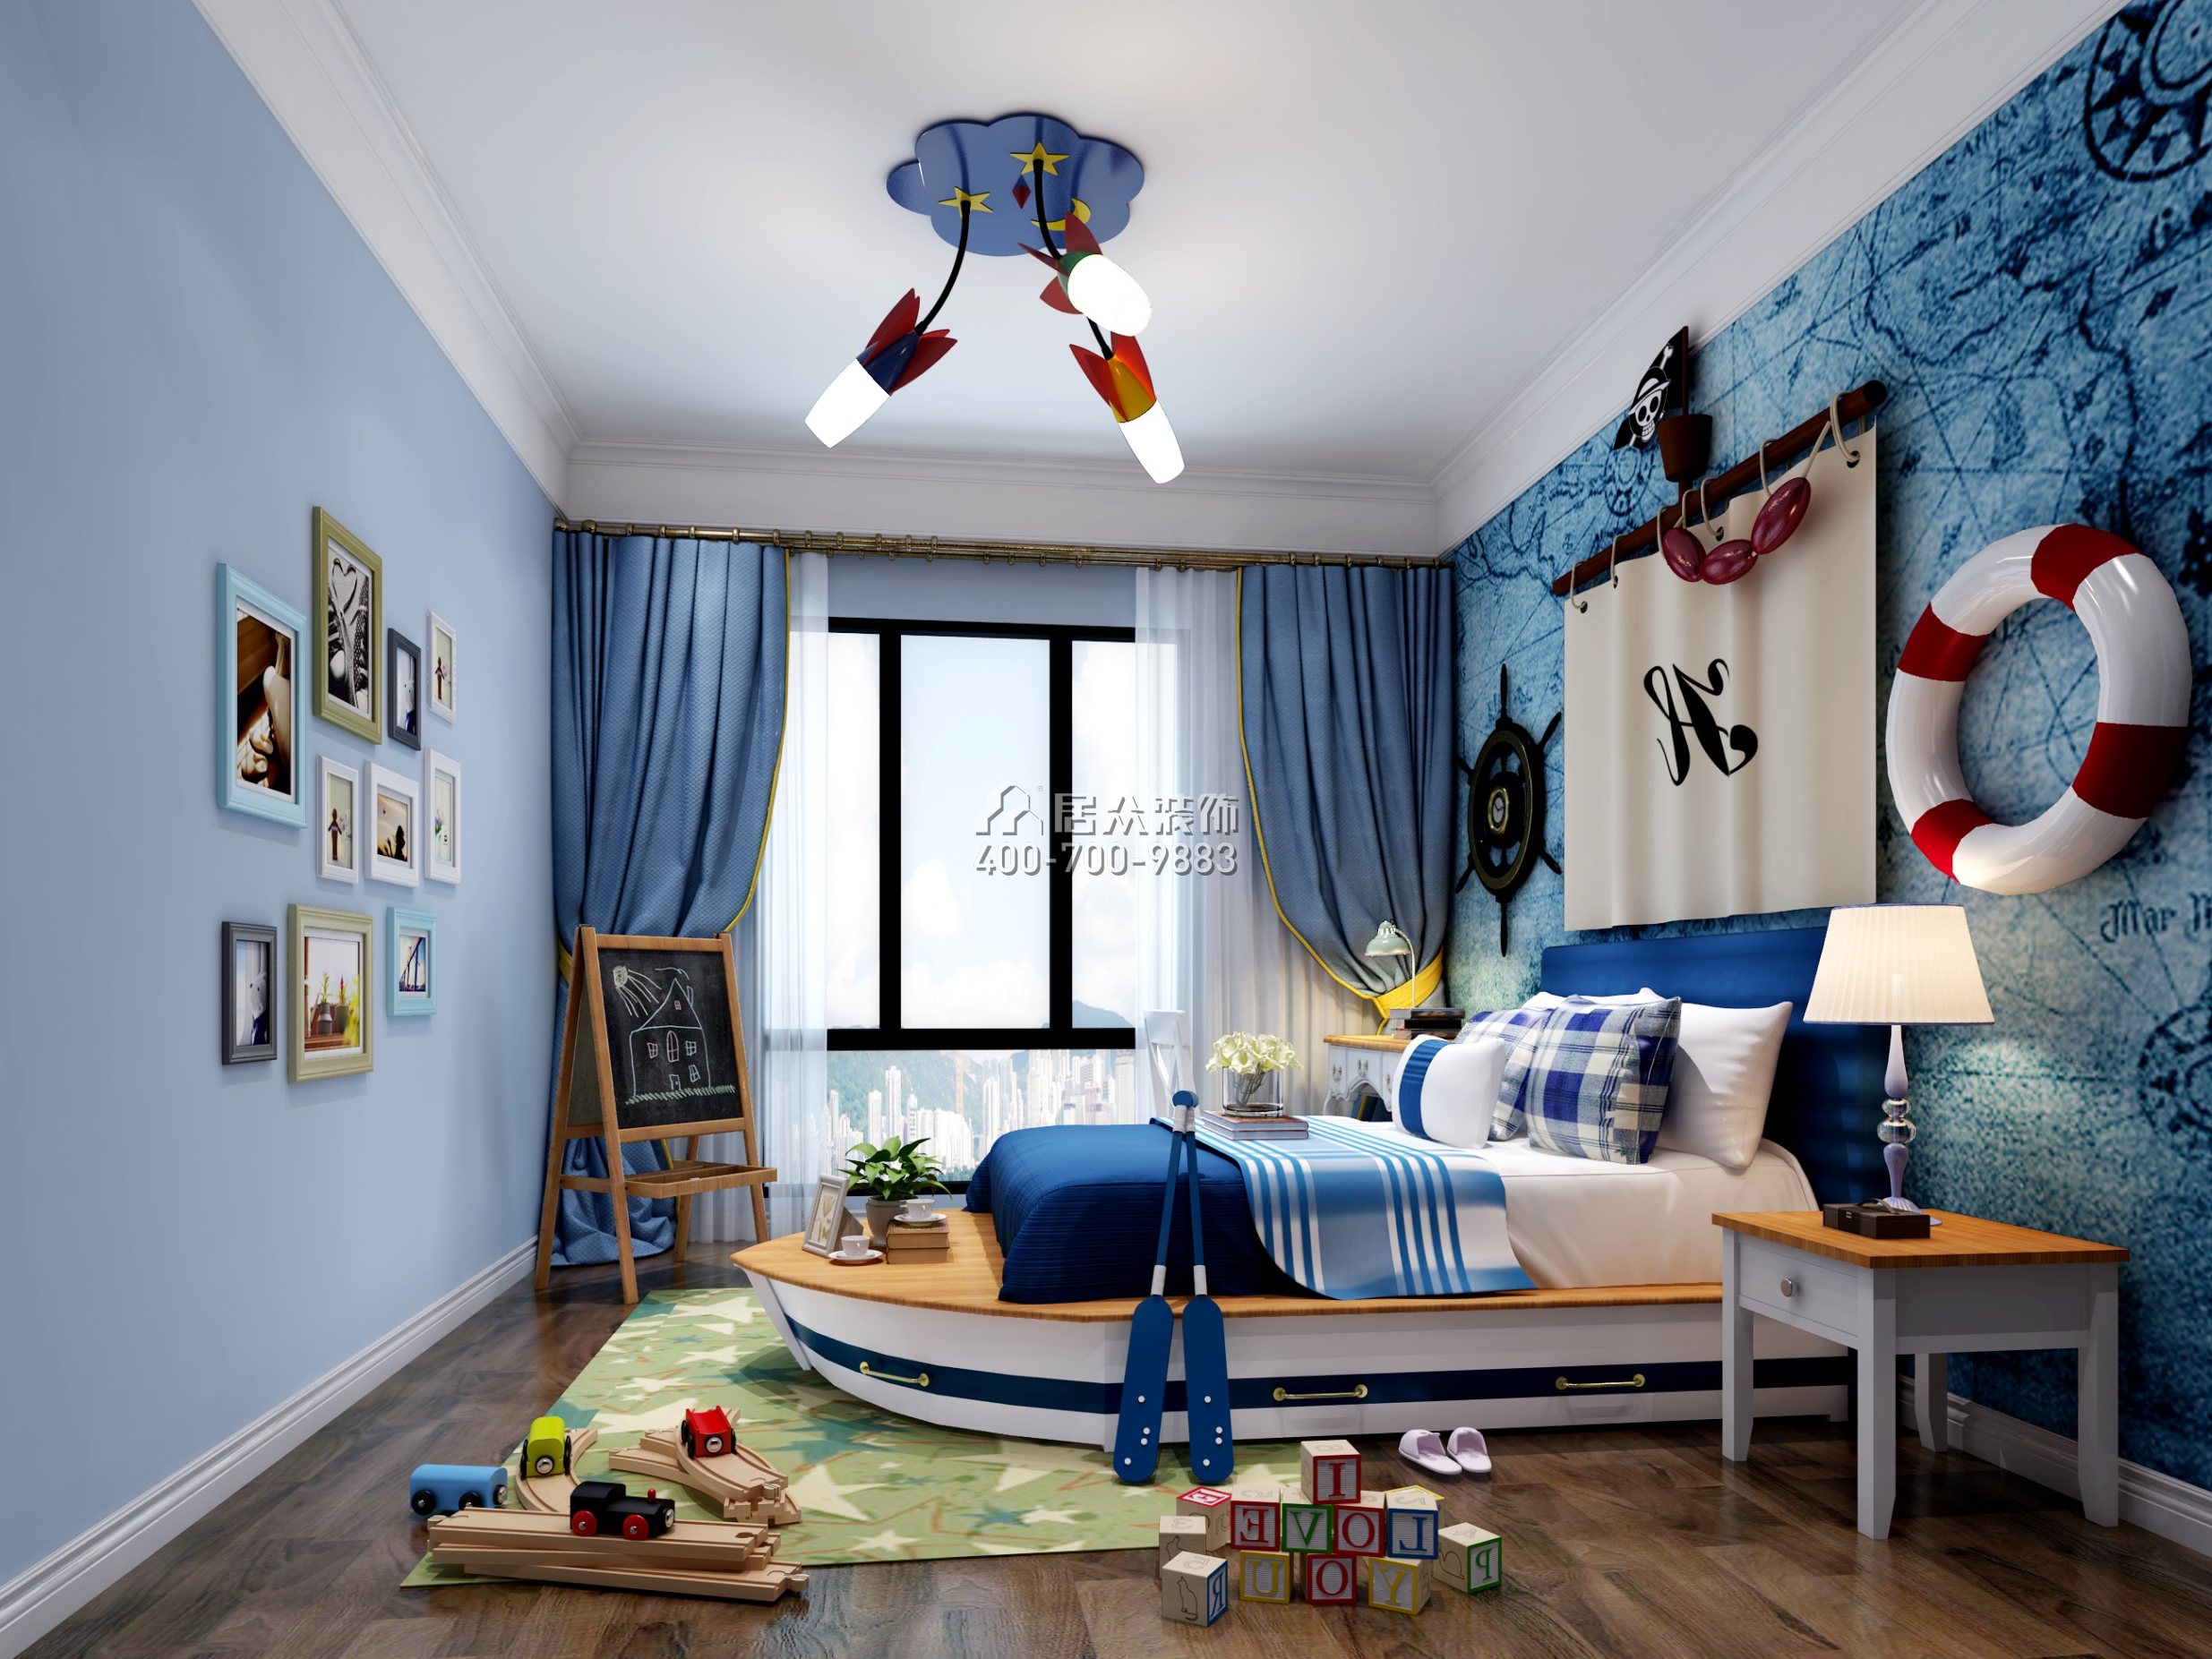 传麒尚林400平方米欧式风格别墅户型儿童房装修效果图